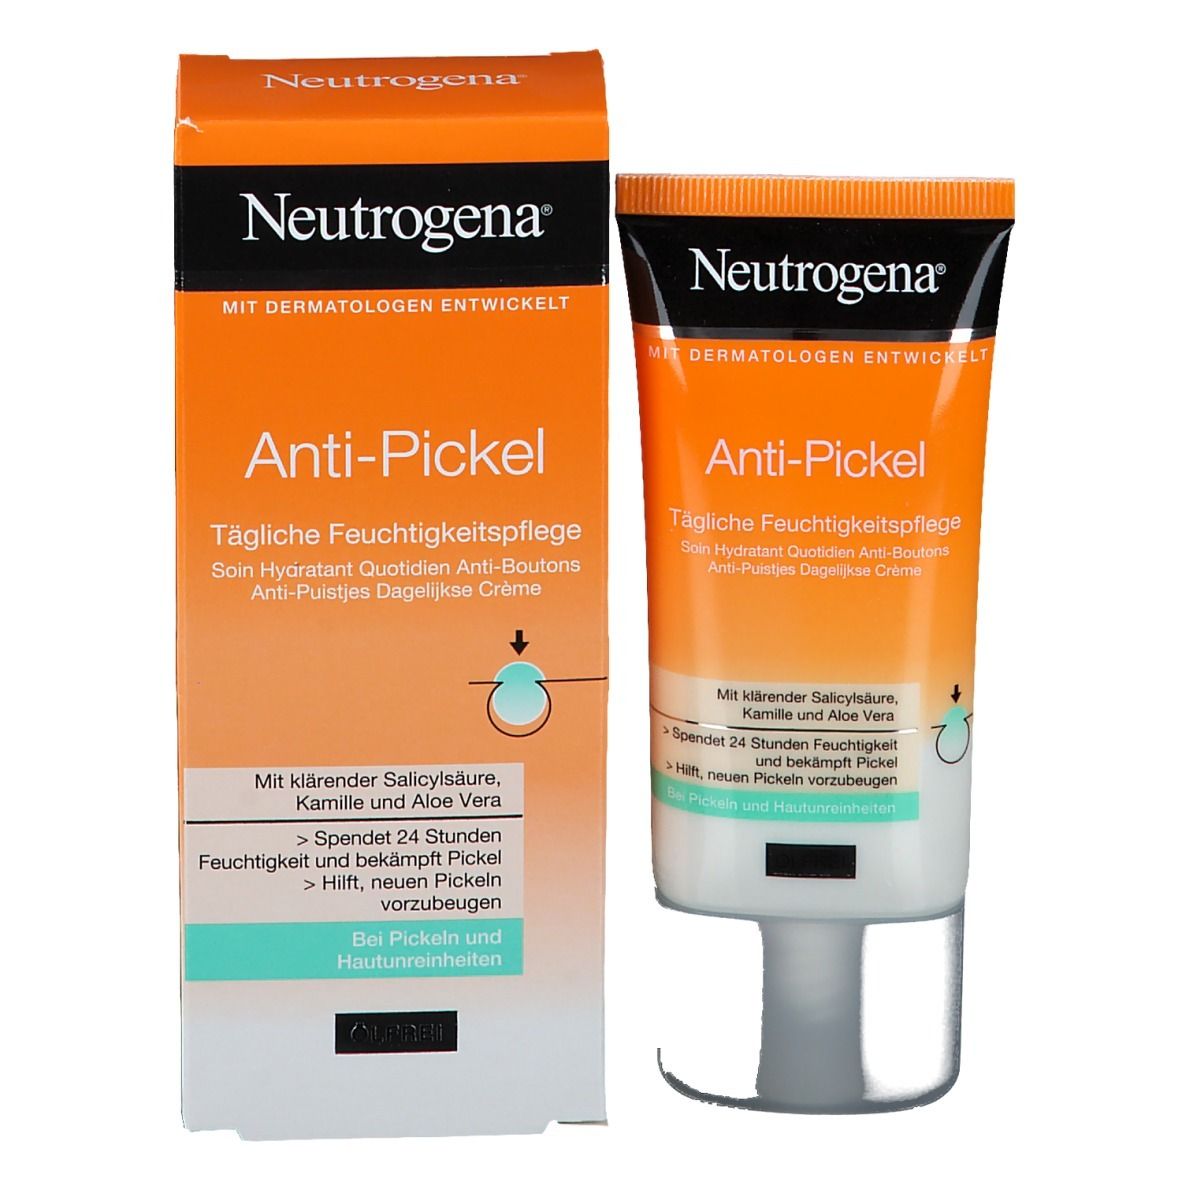 Neutrogena® Anti-Pickel Tägliche Feuchtigkeitspflege